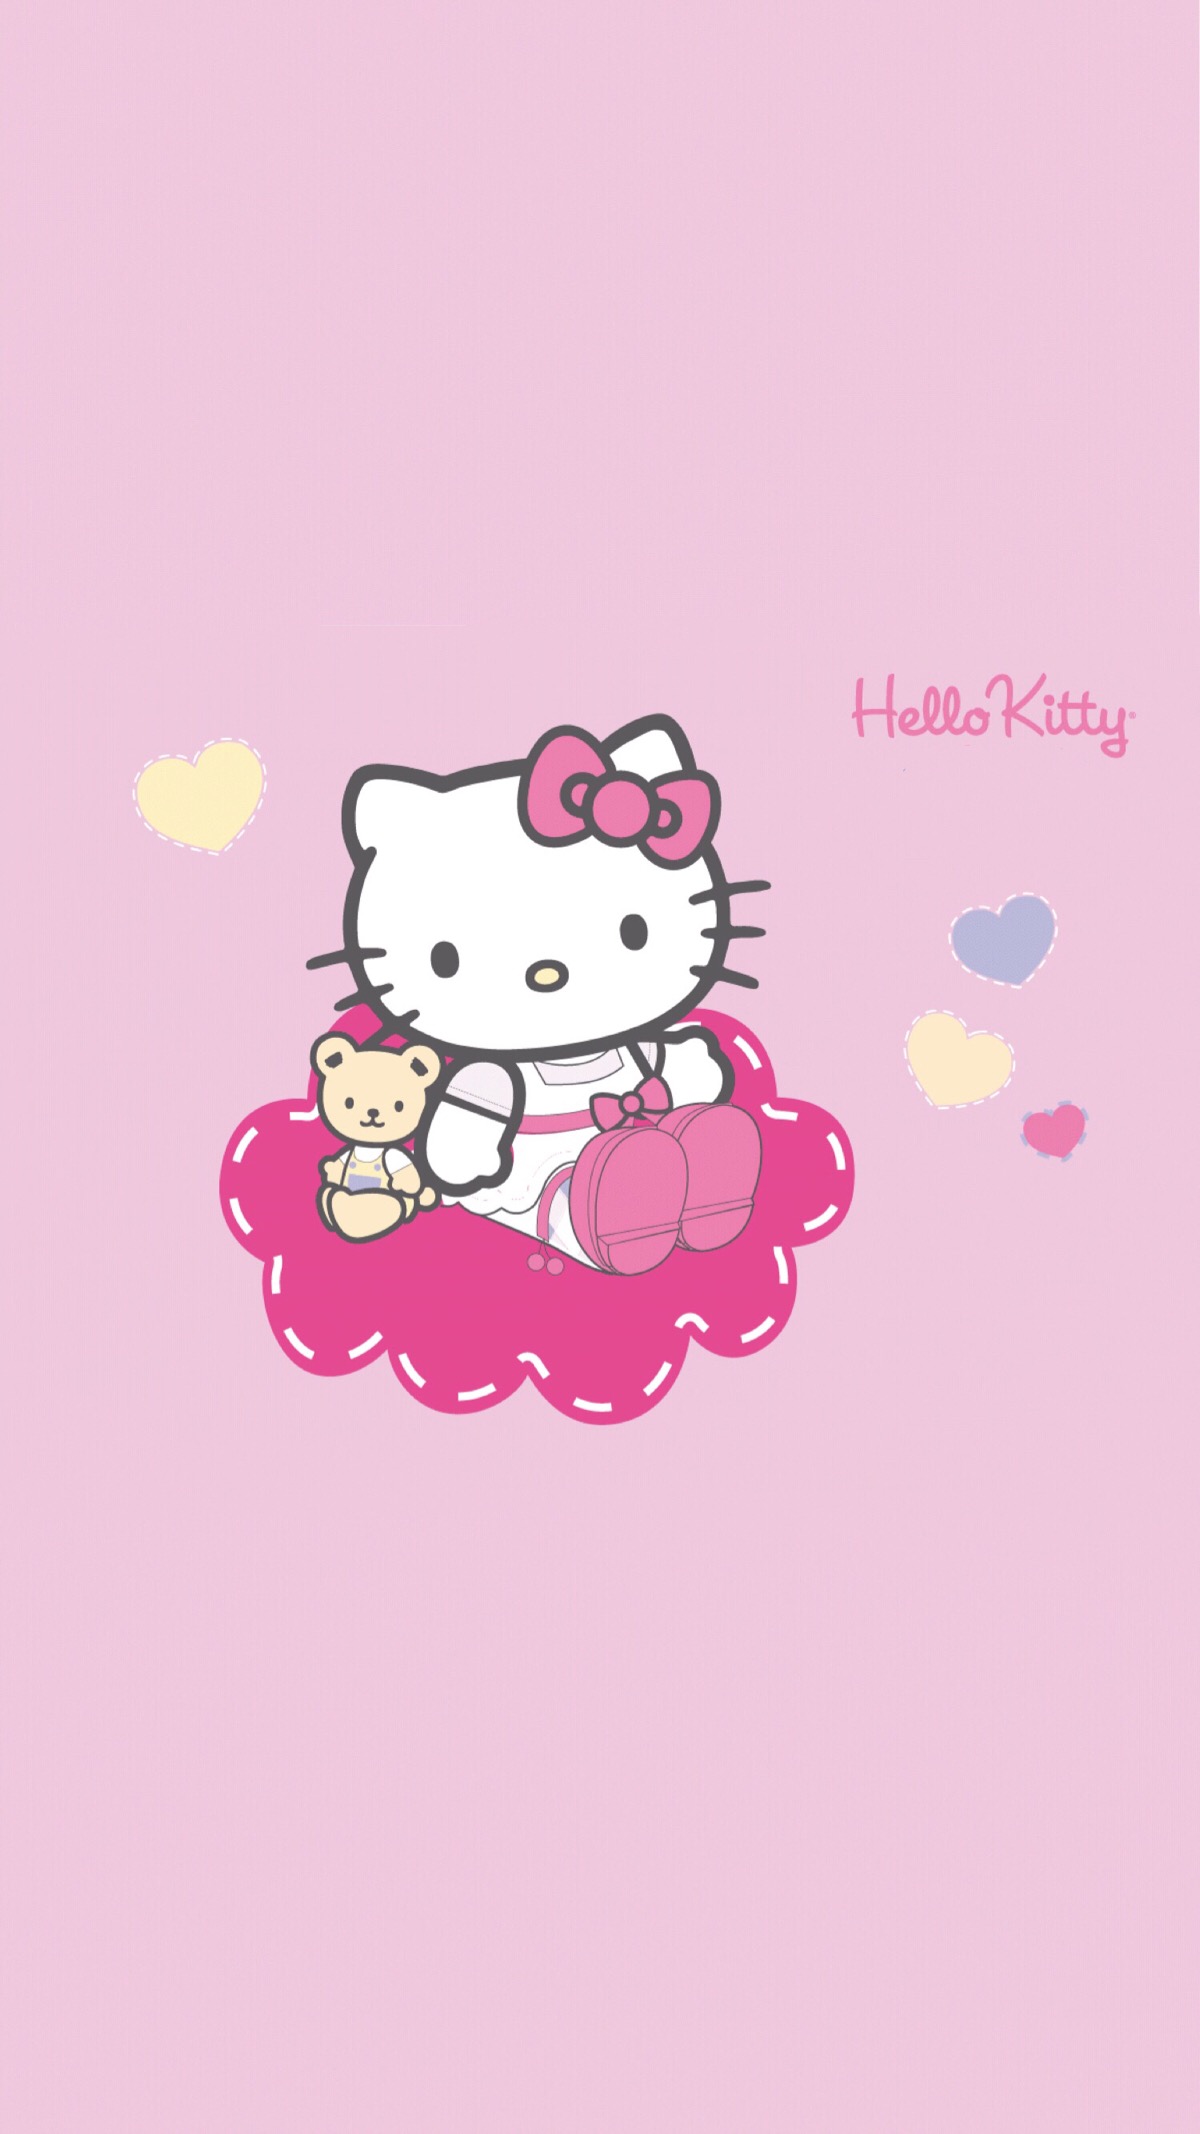 HelloKitty凯蒂猫 - 堆糖，美图壁纸兴趣社区